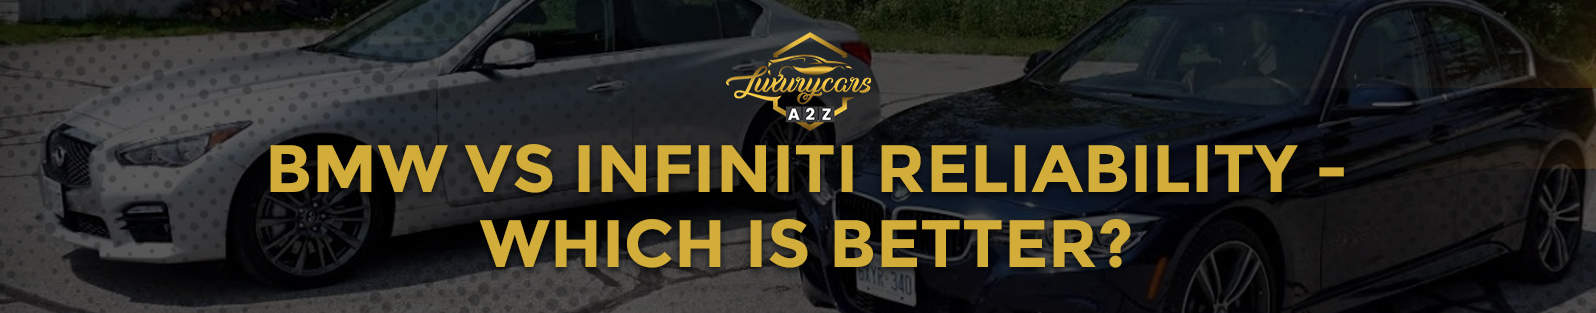 Fiabilité BMW vs Infiniti - laquelle est la meilleure ?